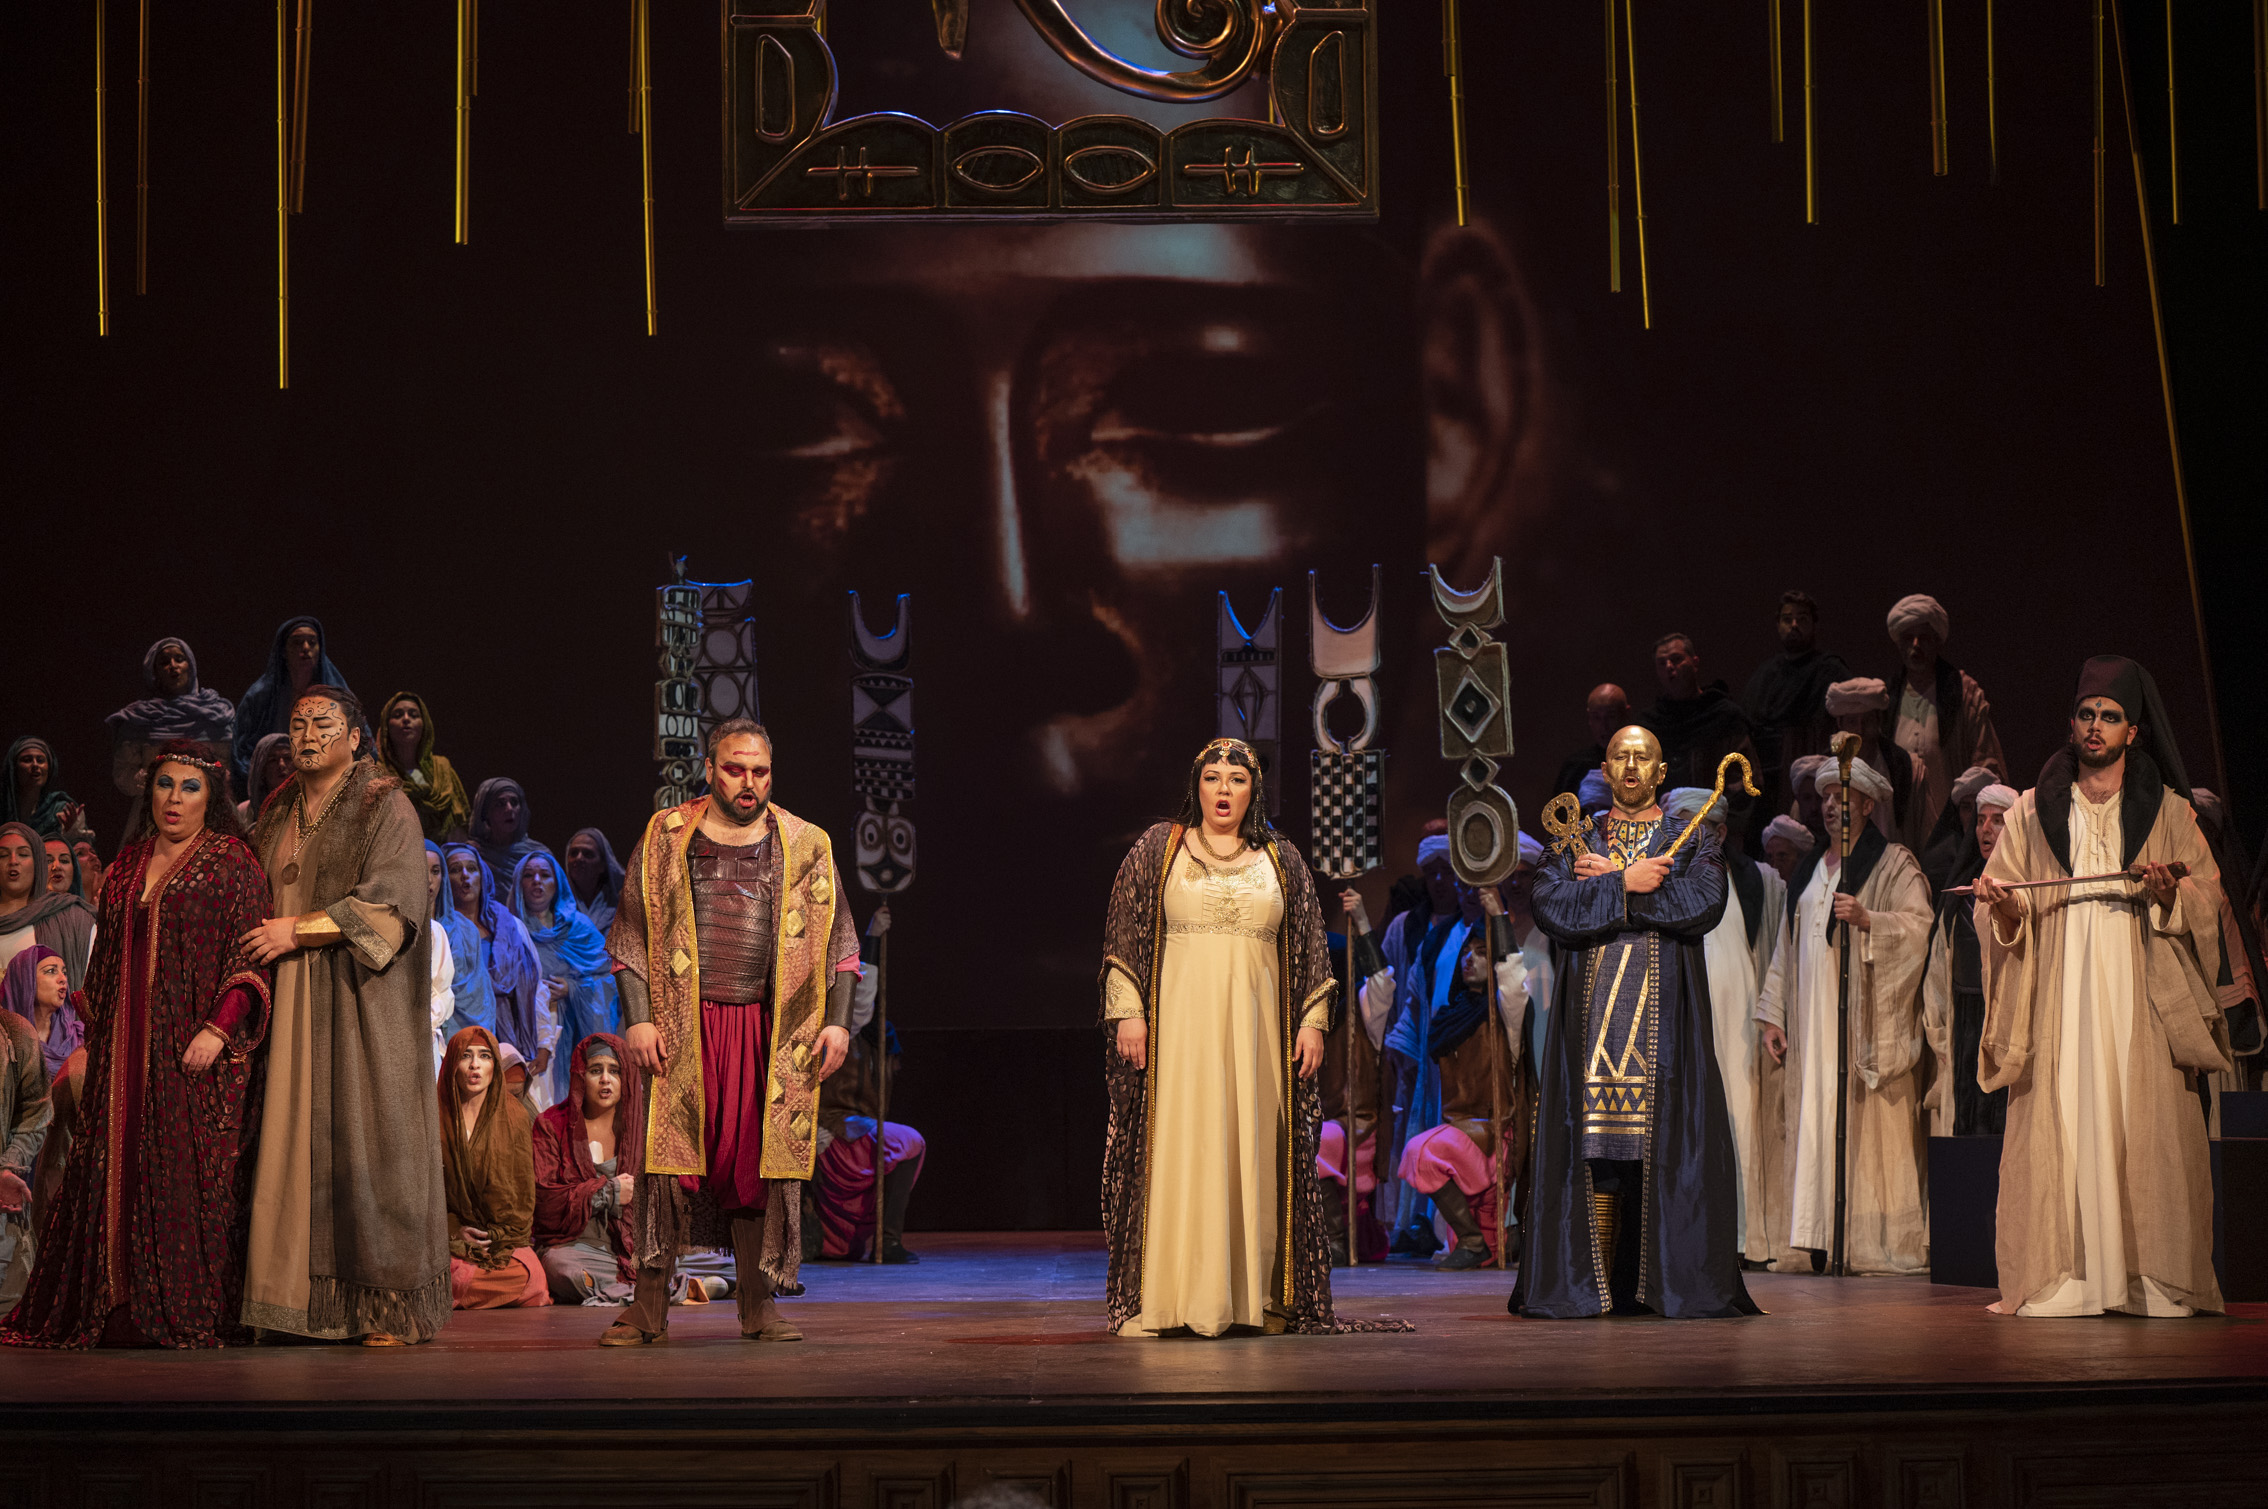 Una escena de "Aida" en Las Palmas / Foto: © Nacho González -ACO